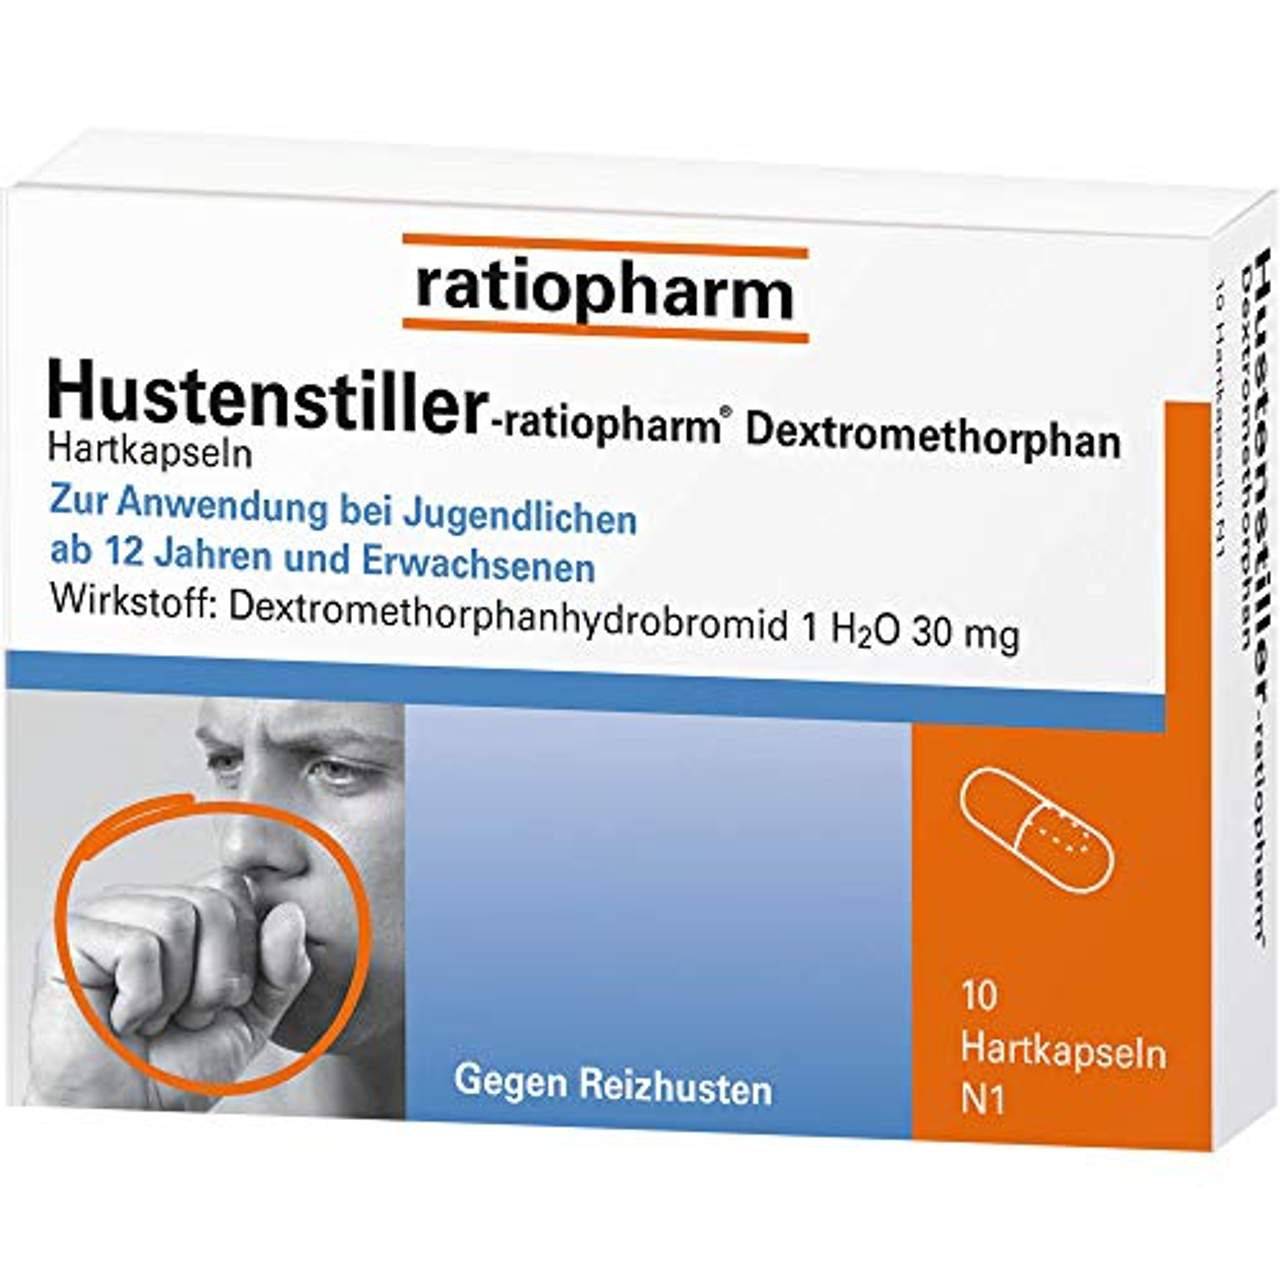 Ratiopharm Hustenstiller-ratiopharm Dextromethorphan Hartkapseln